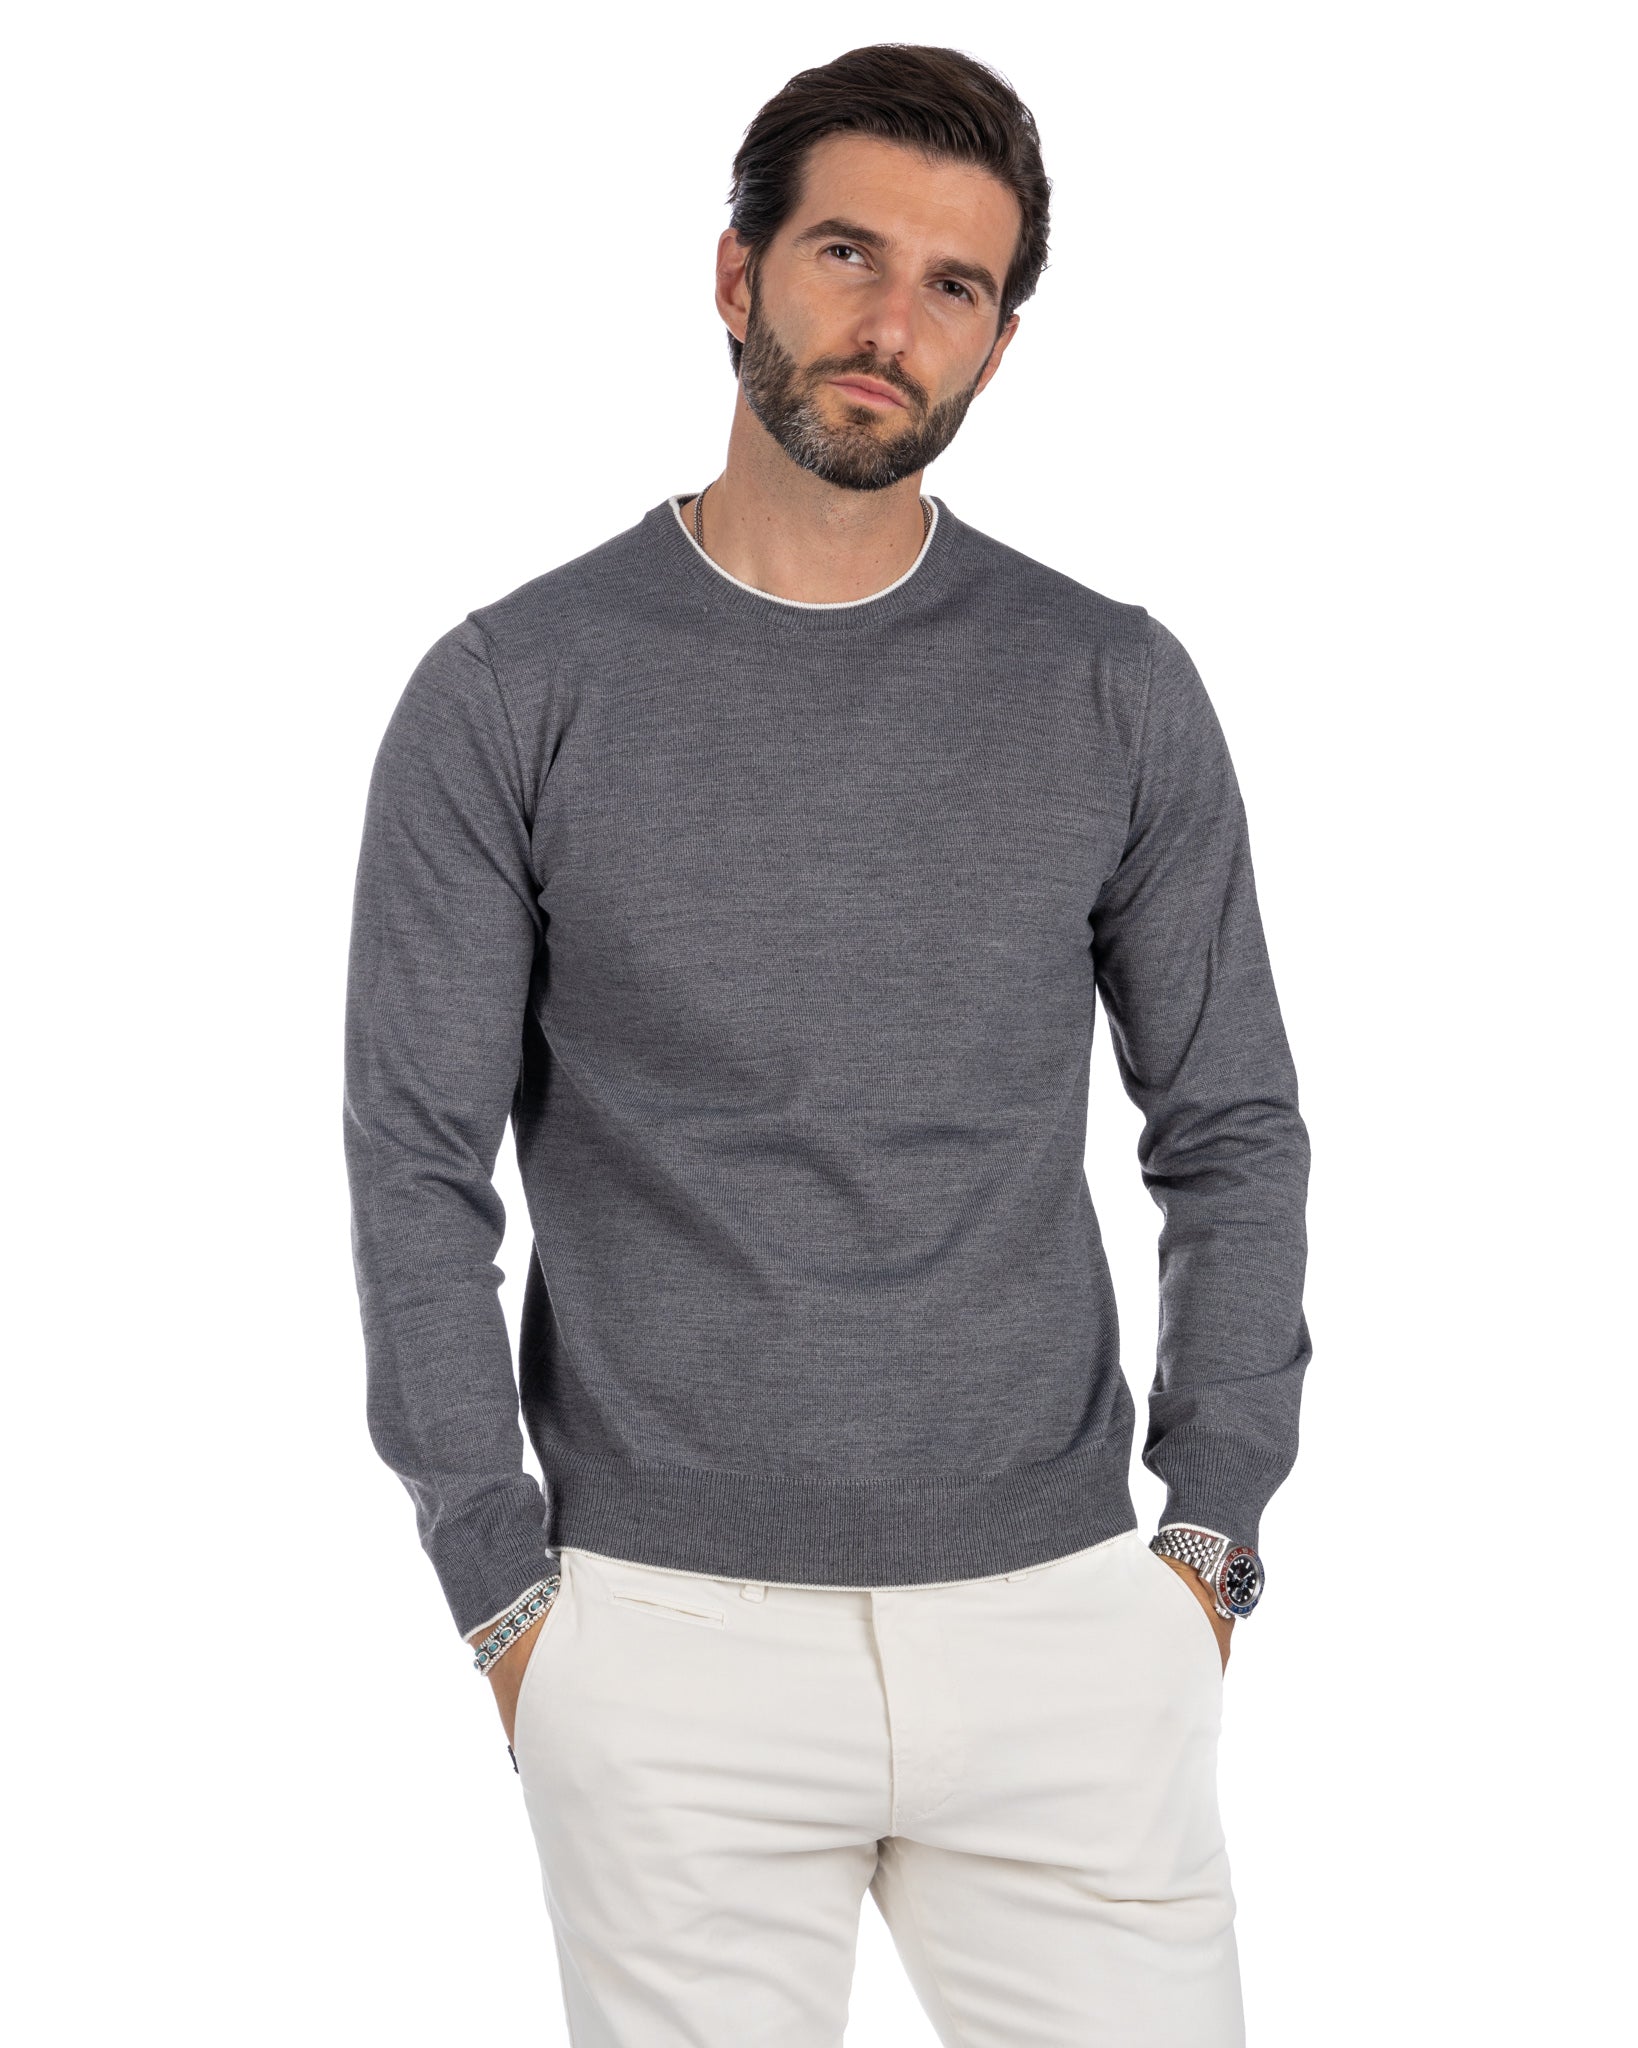 Seve - maglione grigio con bordo bianco